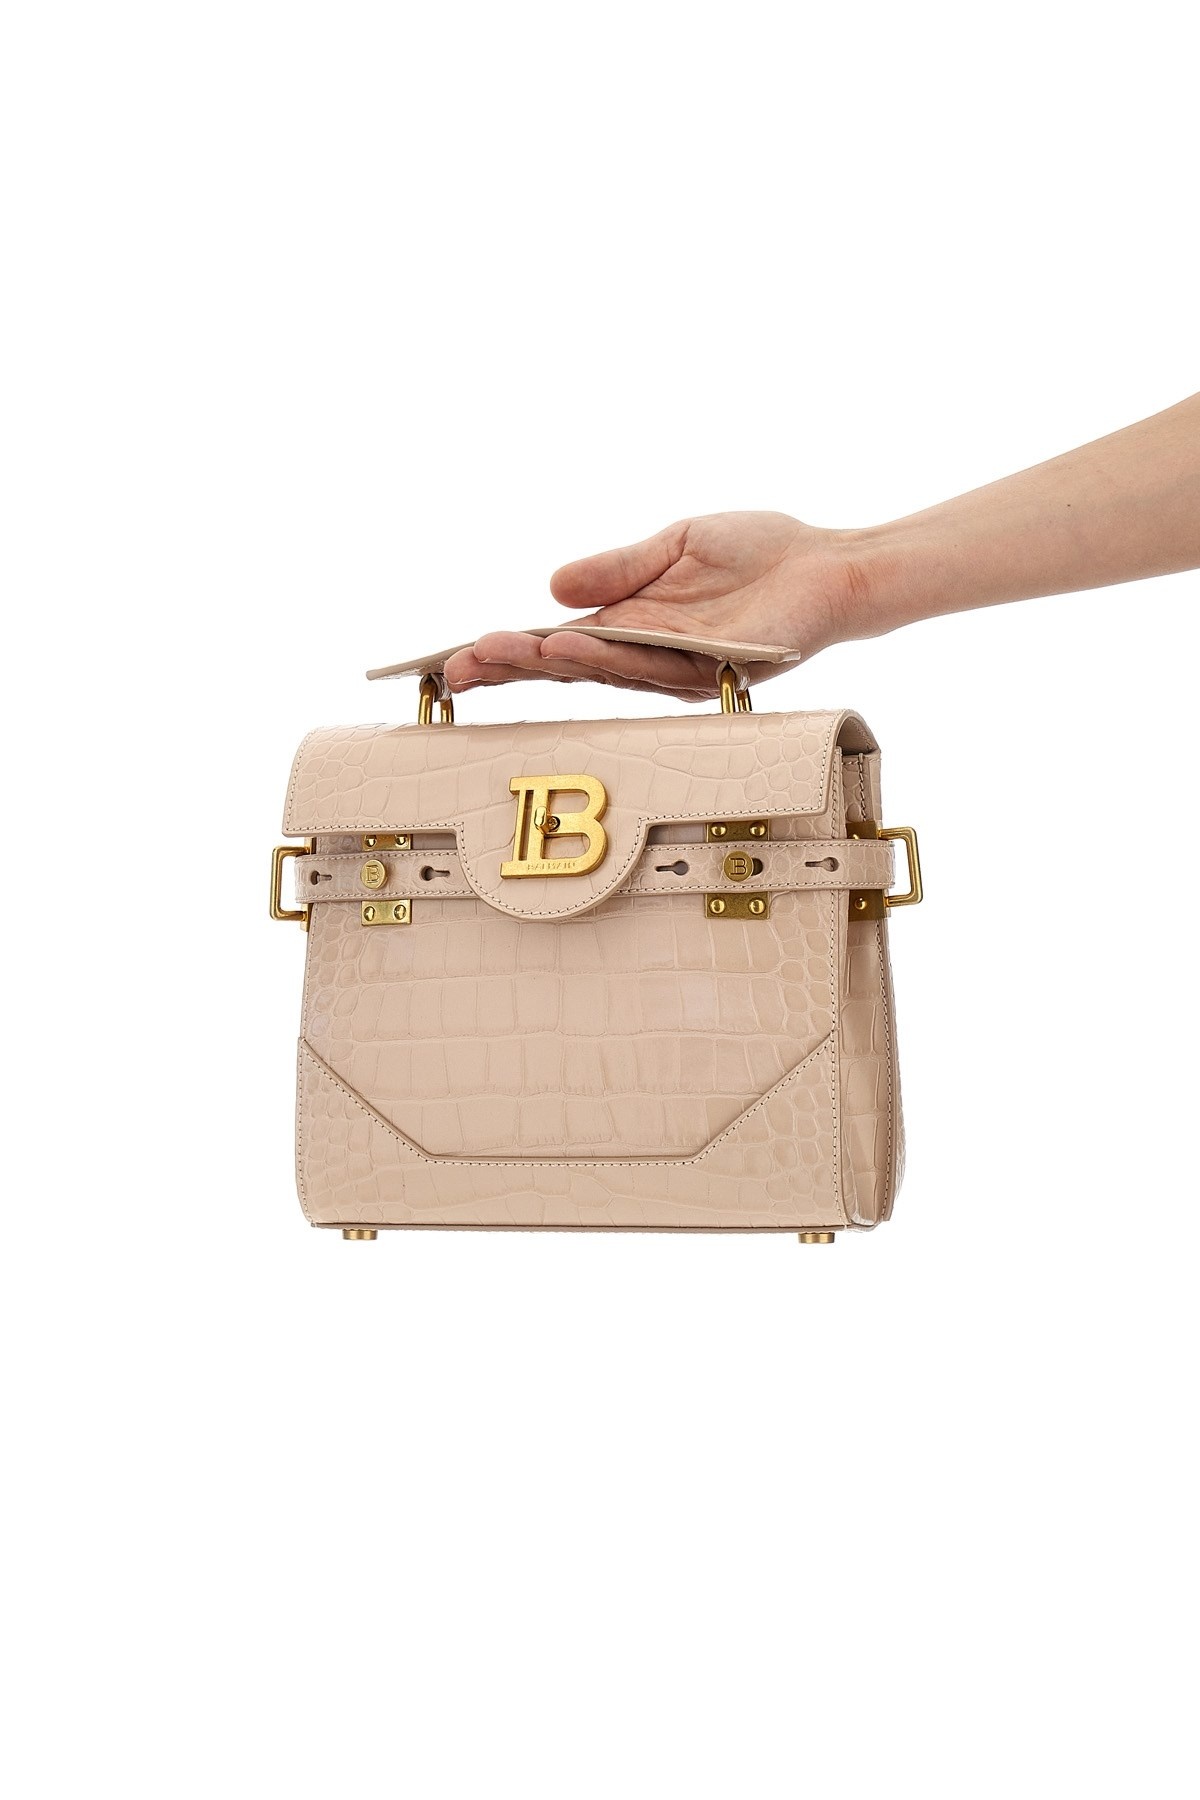 'B-Buzz 23' handbag - 2